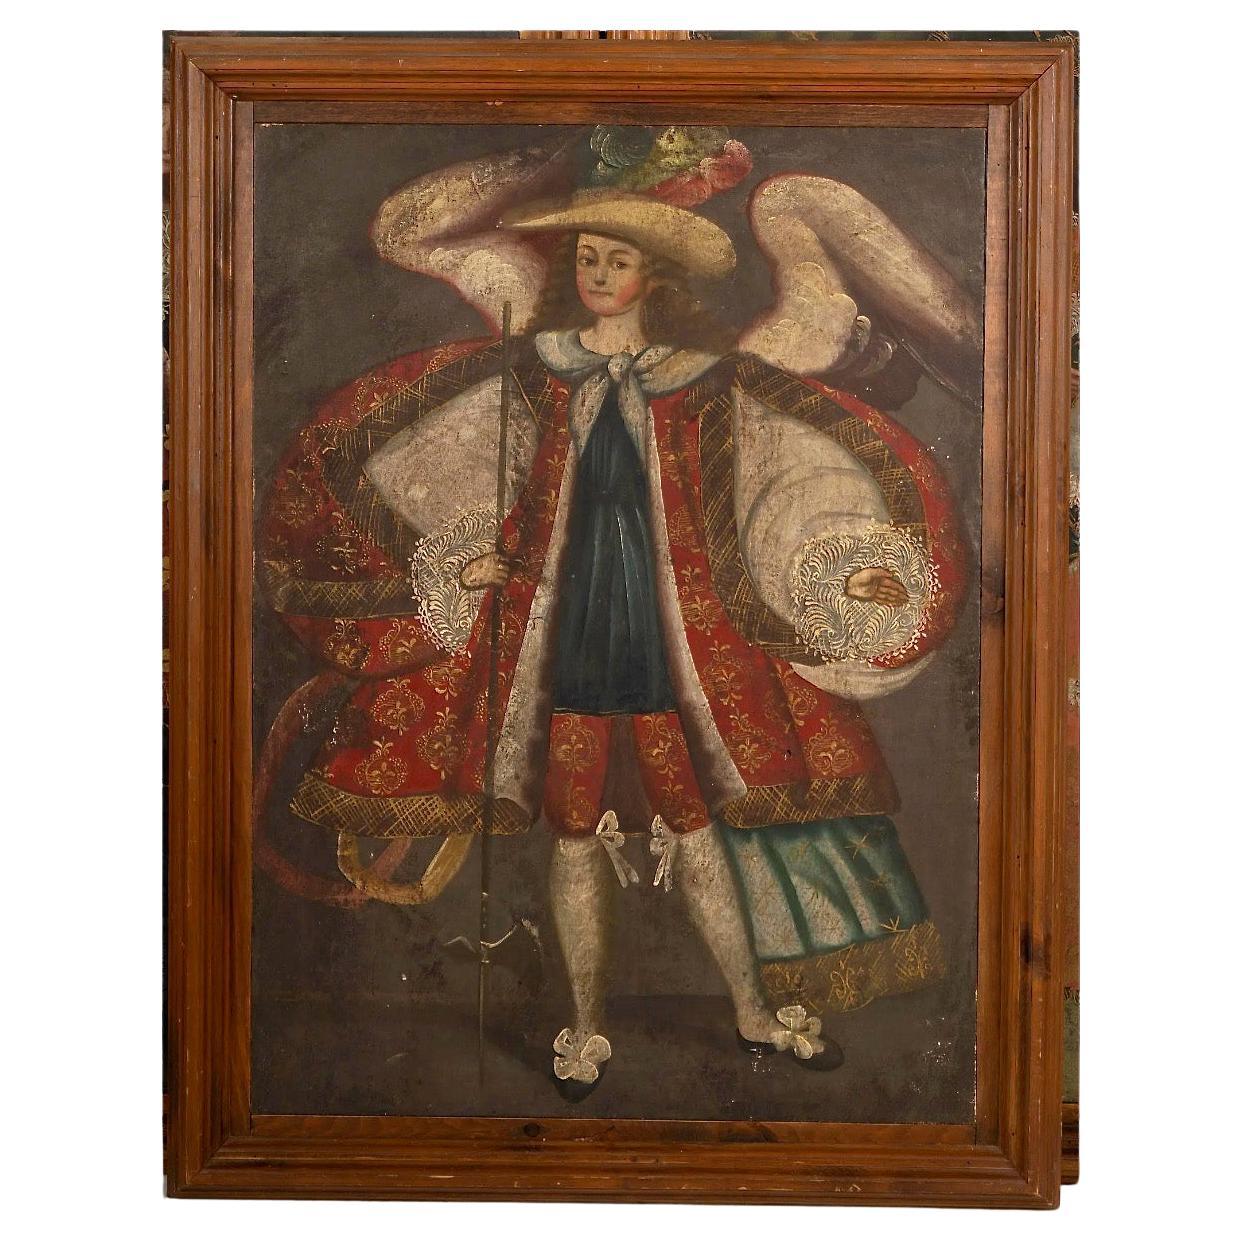 Spanisches Cuzco-Gemälde des Archangel Michael aus der spanischen Kolonialzeit